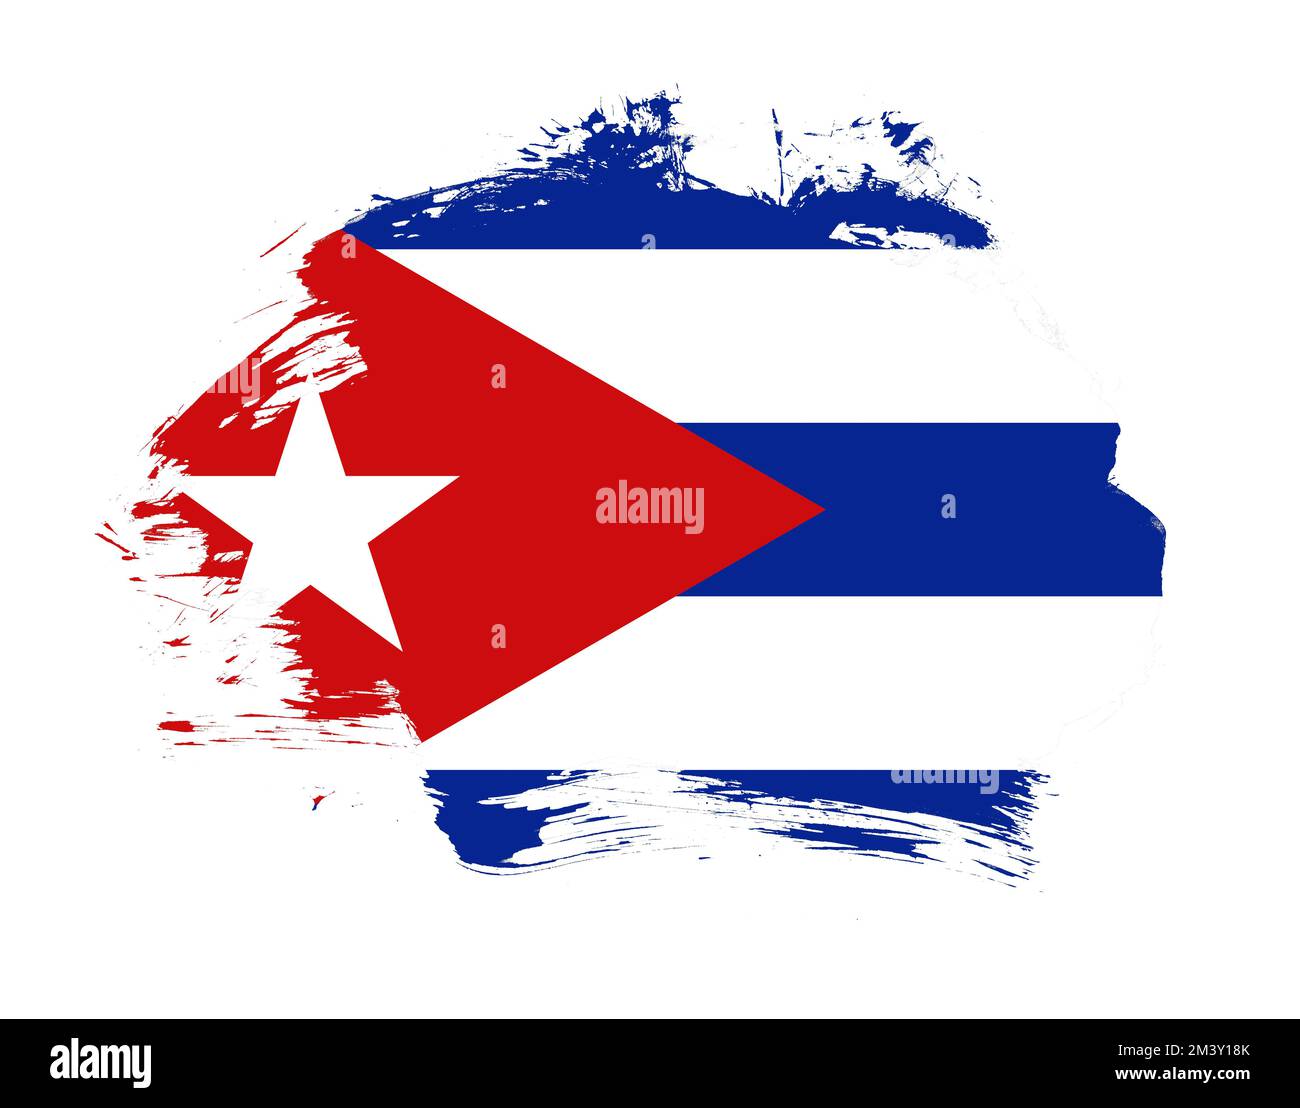 Cuba flag painted on minimal brush stroke background Stock Photo